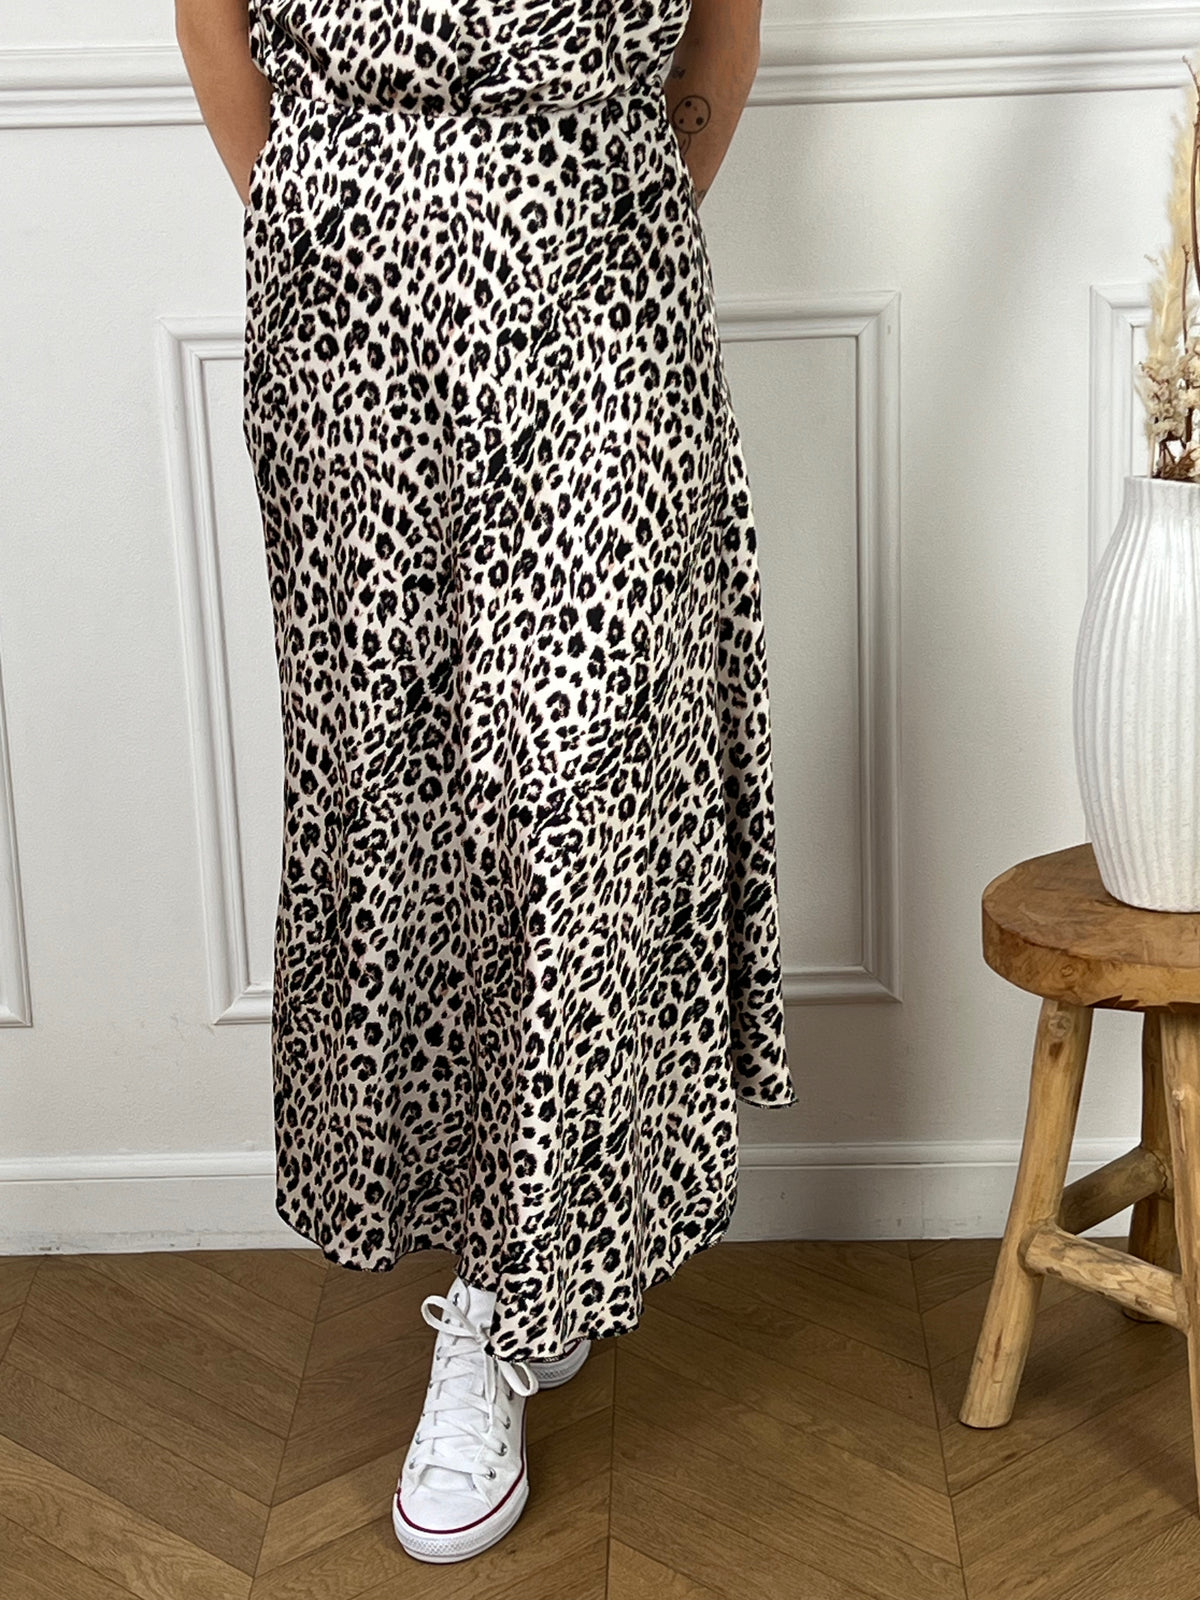 Découvrez notre jupe longue à motif léopard Khloe ! Avec sa taille élastiquée et sa coupe évasée, elle vous offrira un look féminin et confortable. Faites ressortir votre côté sauvage avec cette jupe fluide et tendance.